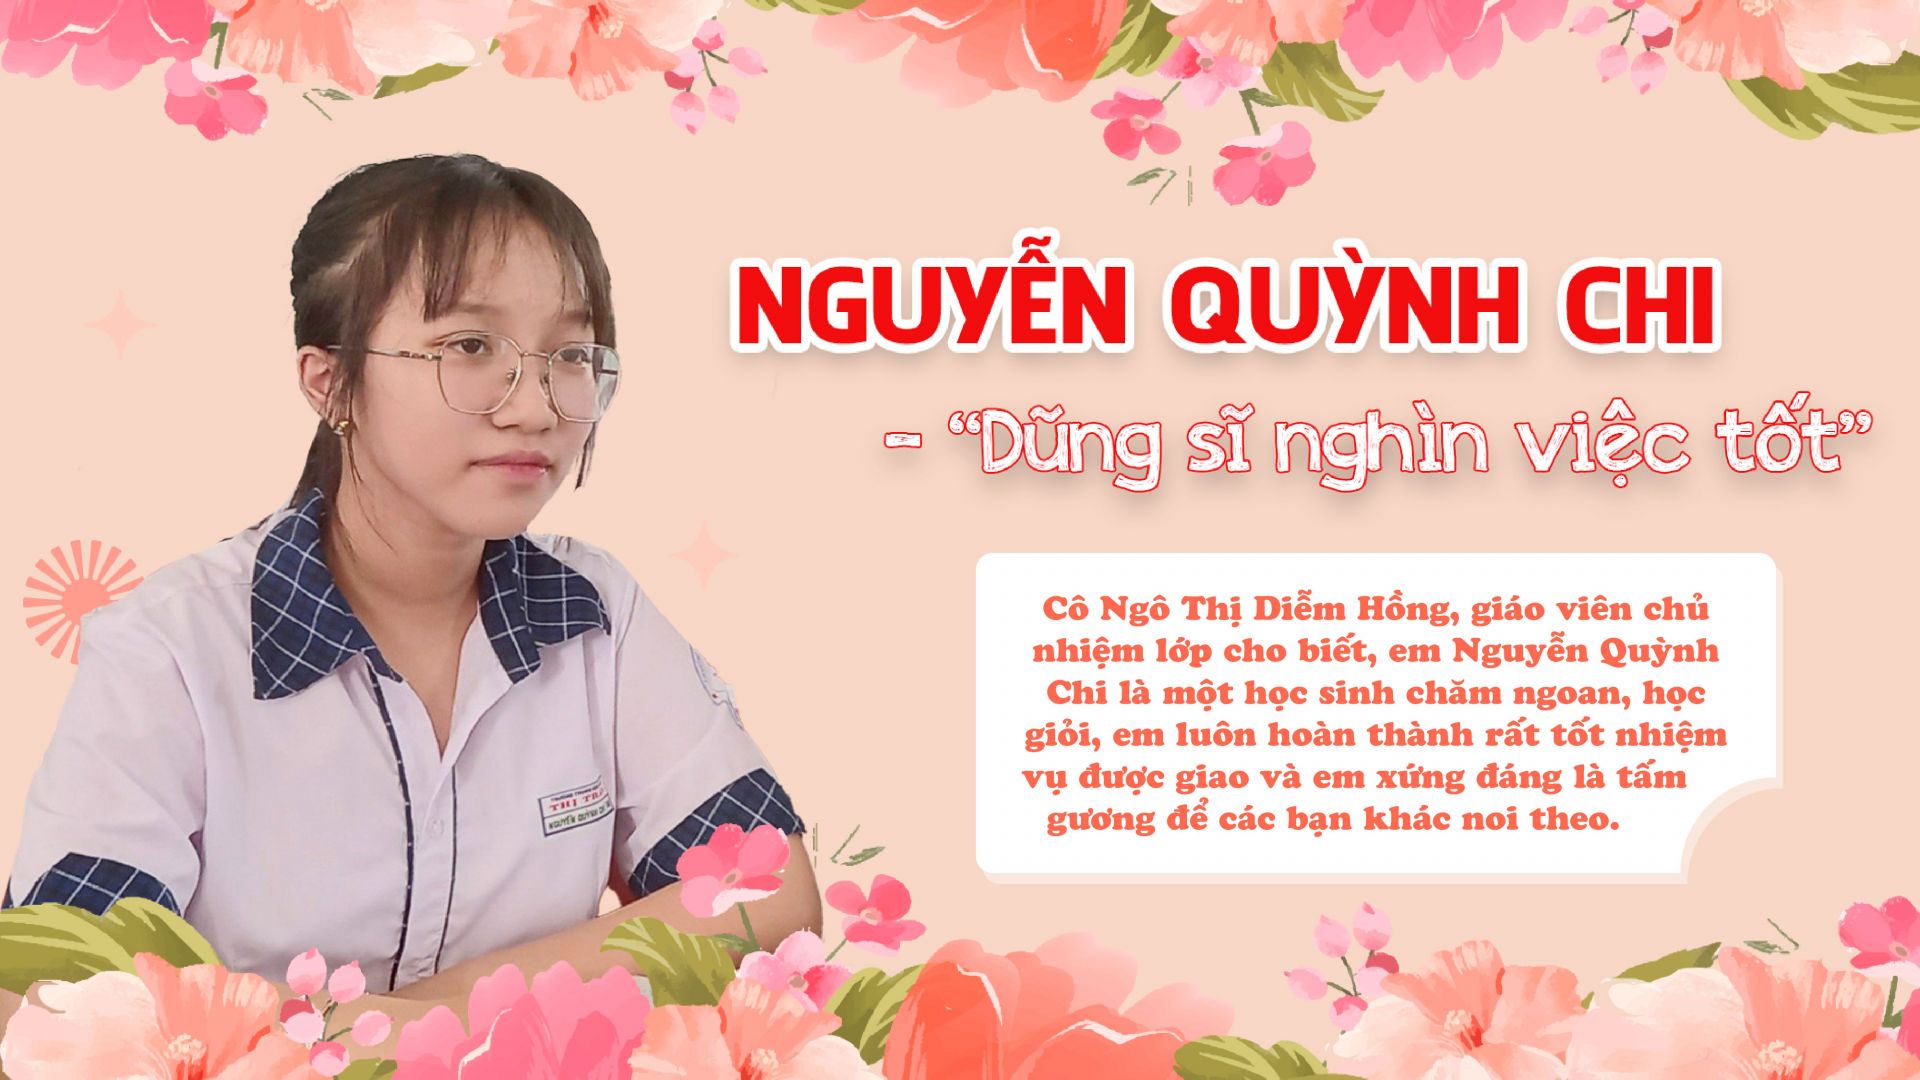 Nguyễn Quỳnh Chi – “Dũng sĩ nghìn việc tốt”